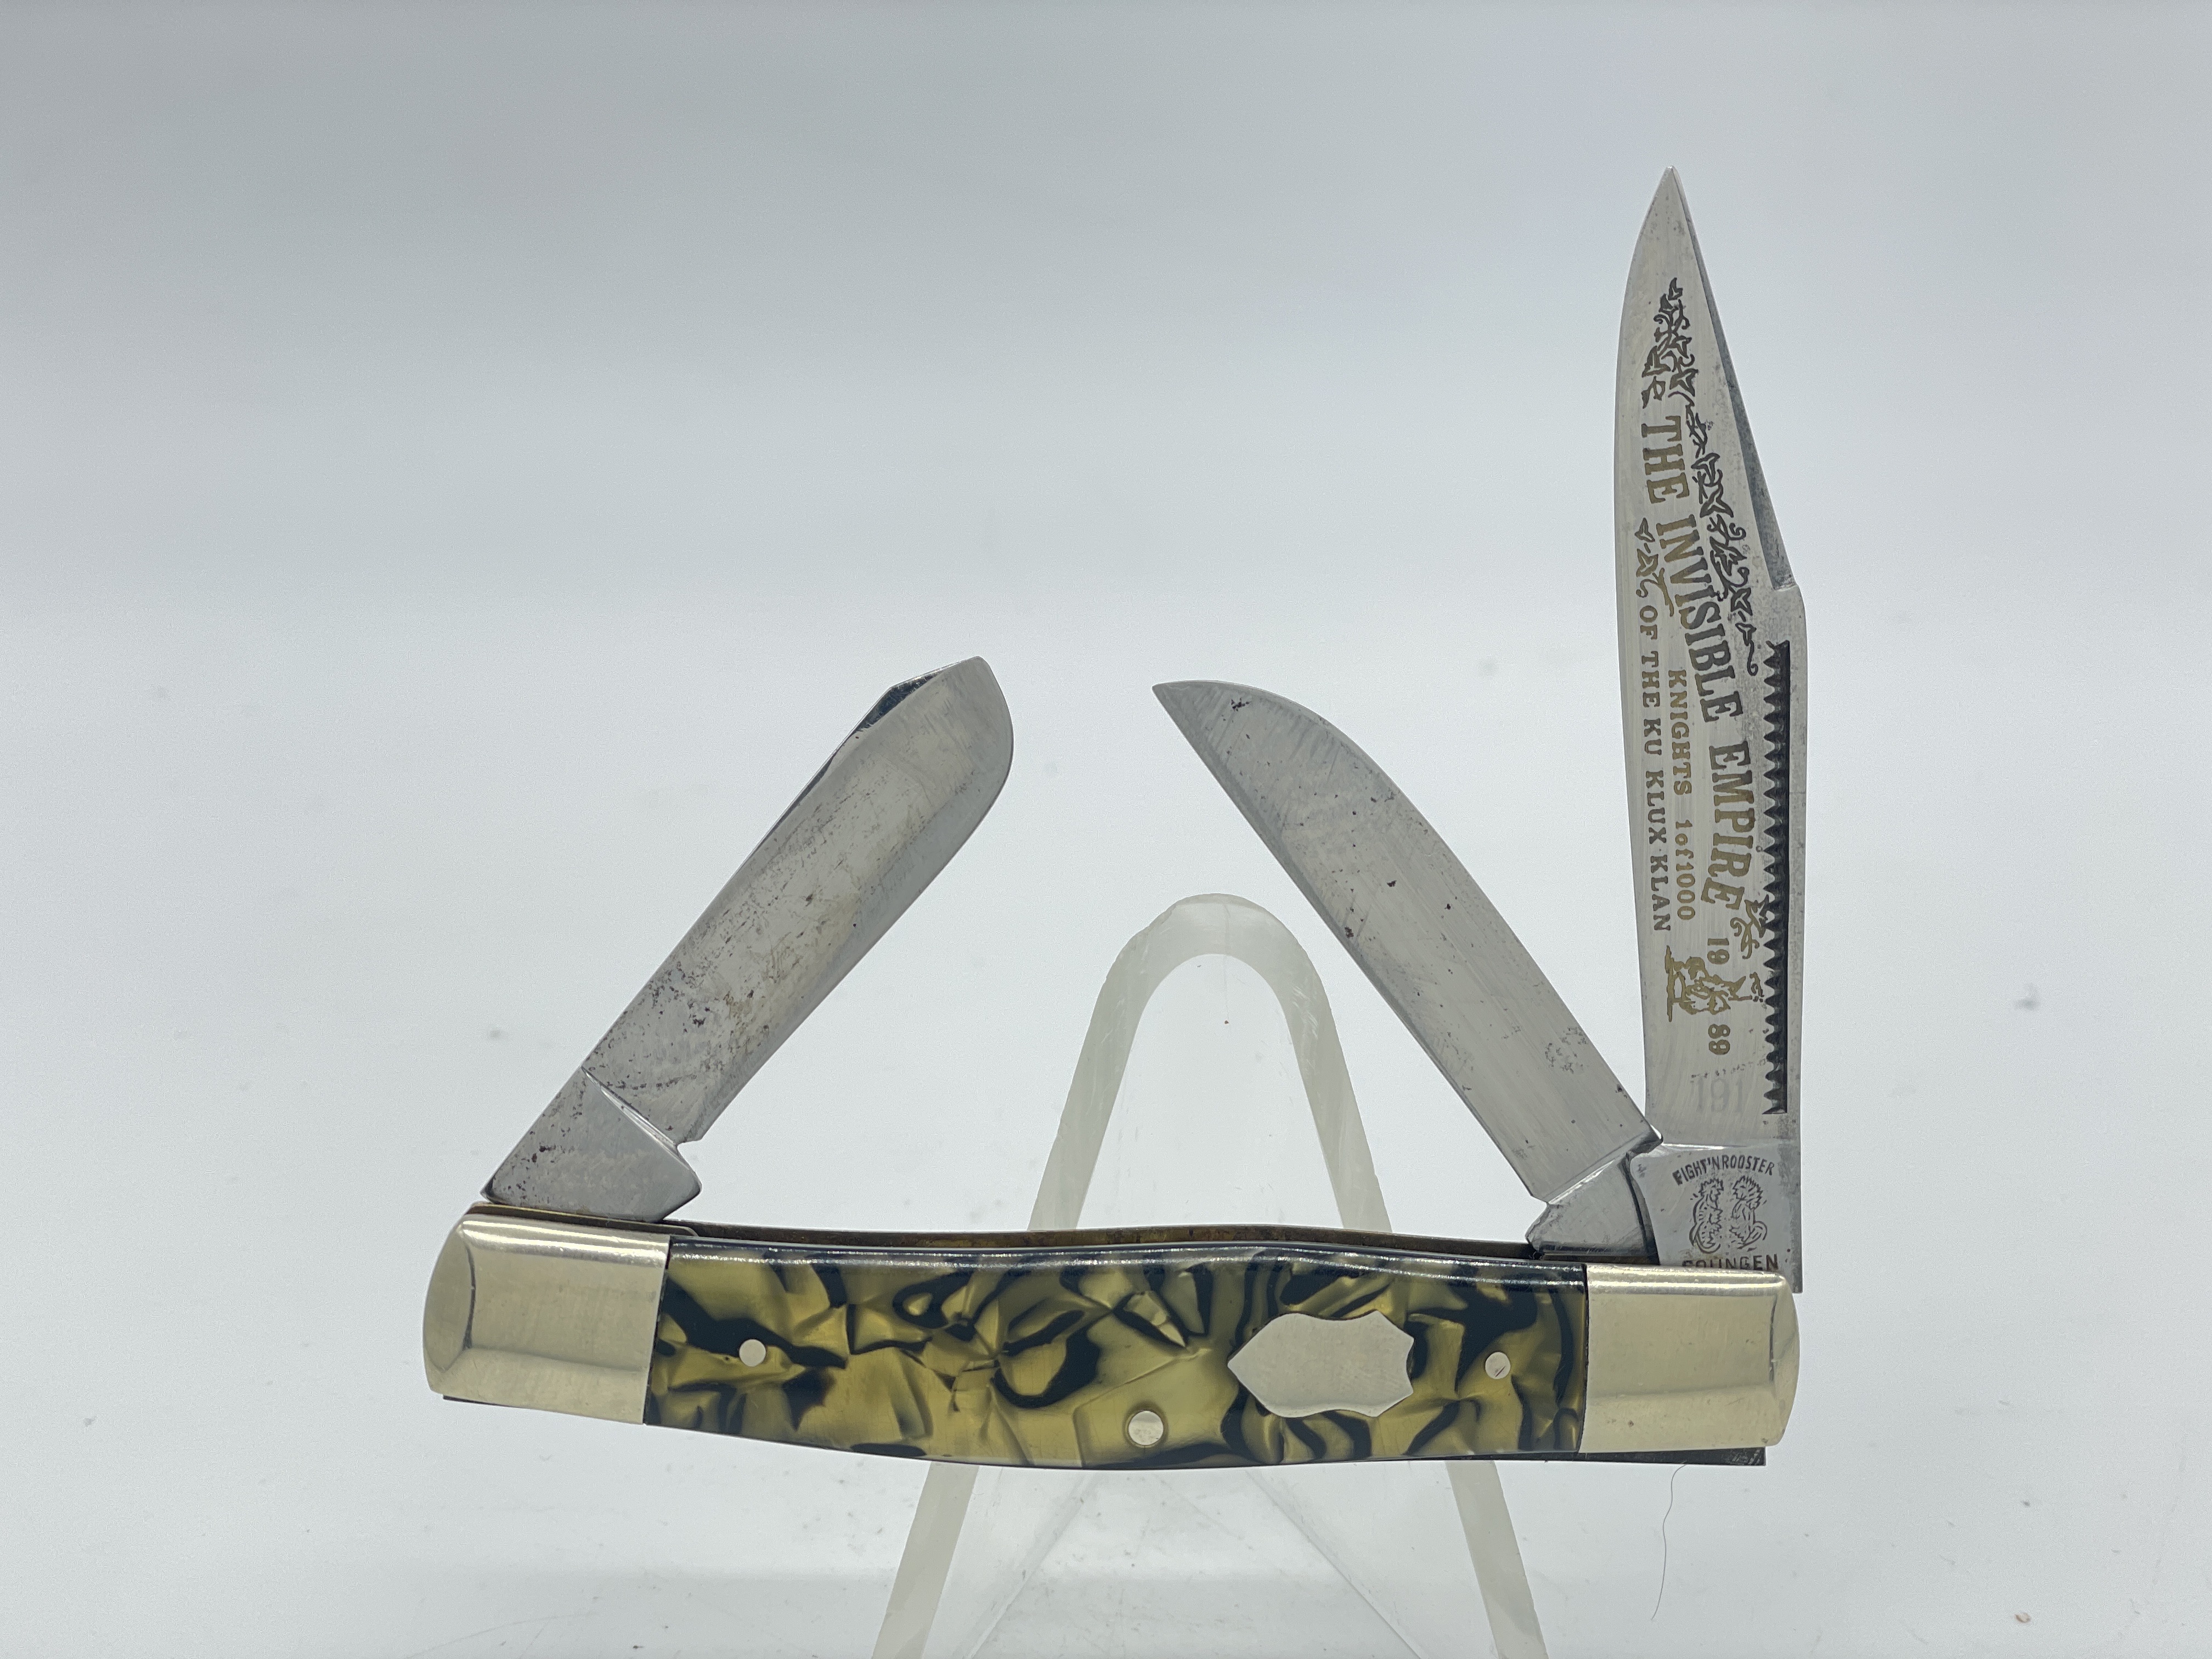 RED NINJA BAT WARRIOR SWORD 26.5 OVERALL W/2 PCS KNIFE SET